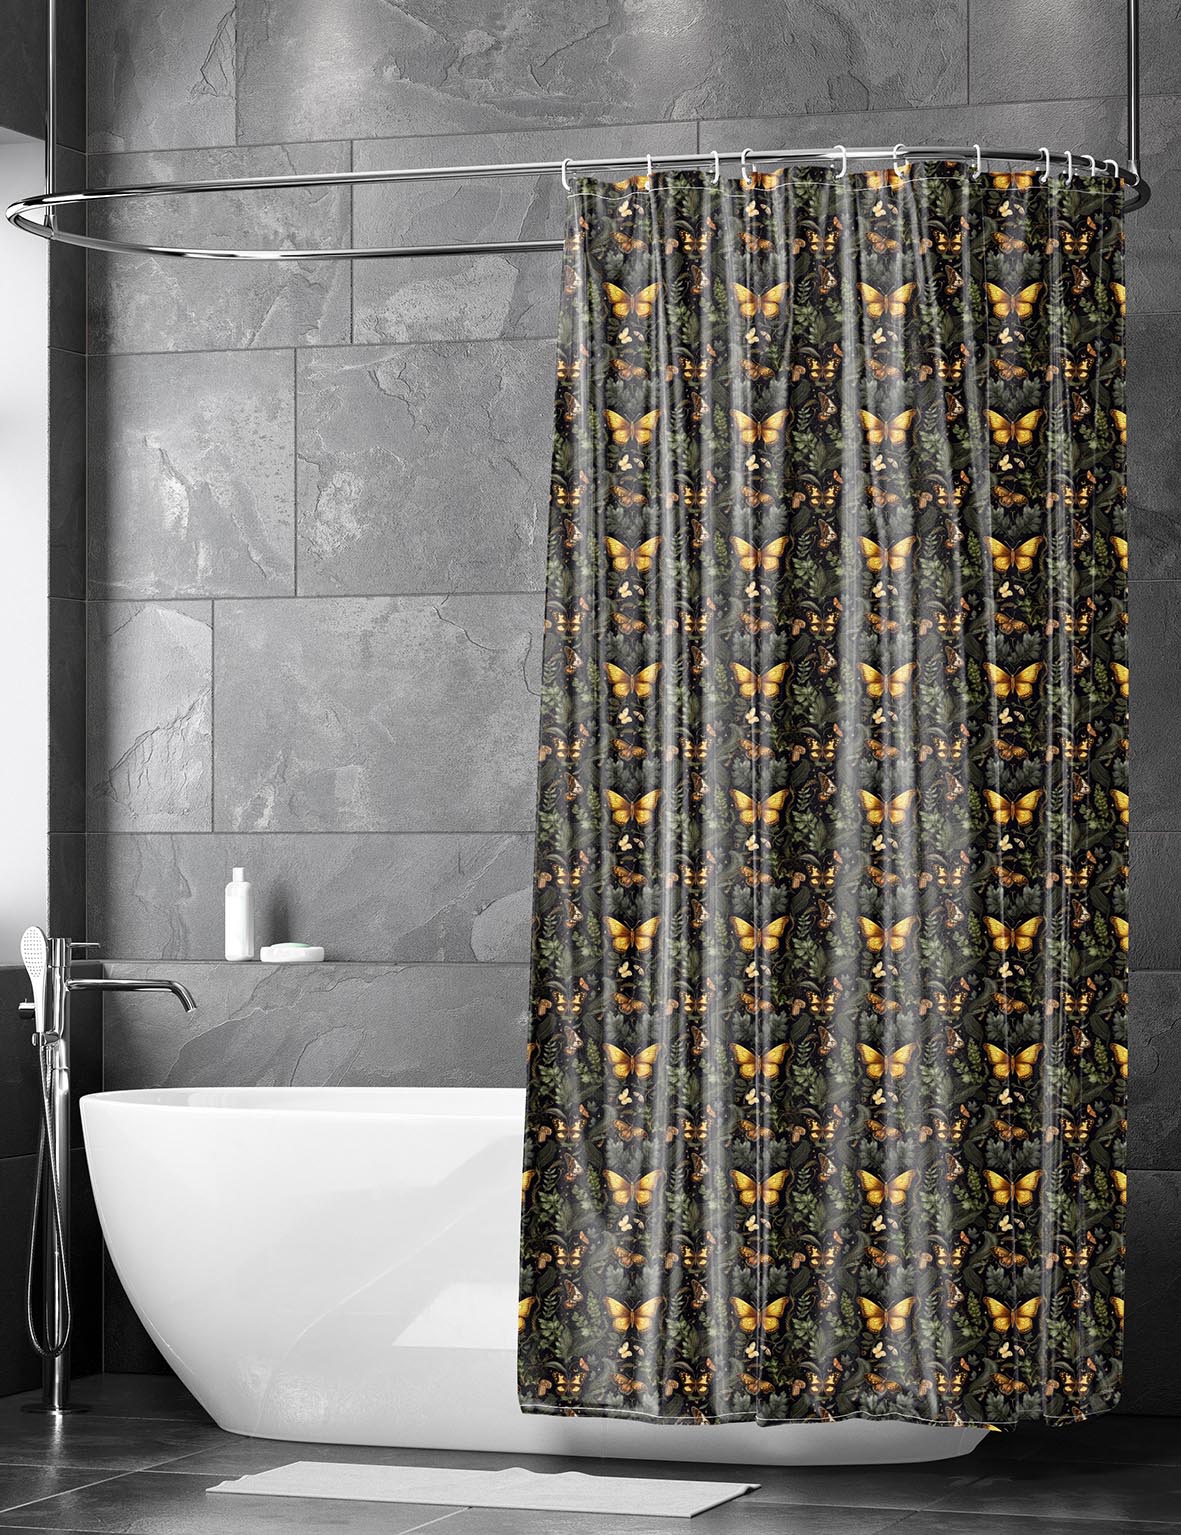 SECRET GARDEN - Shower Curtain / Bath Mat Set